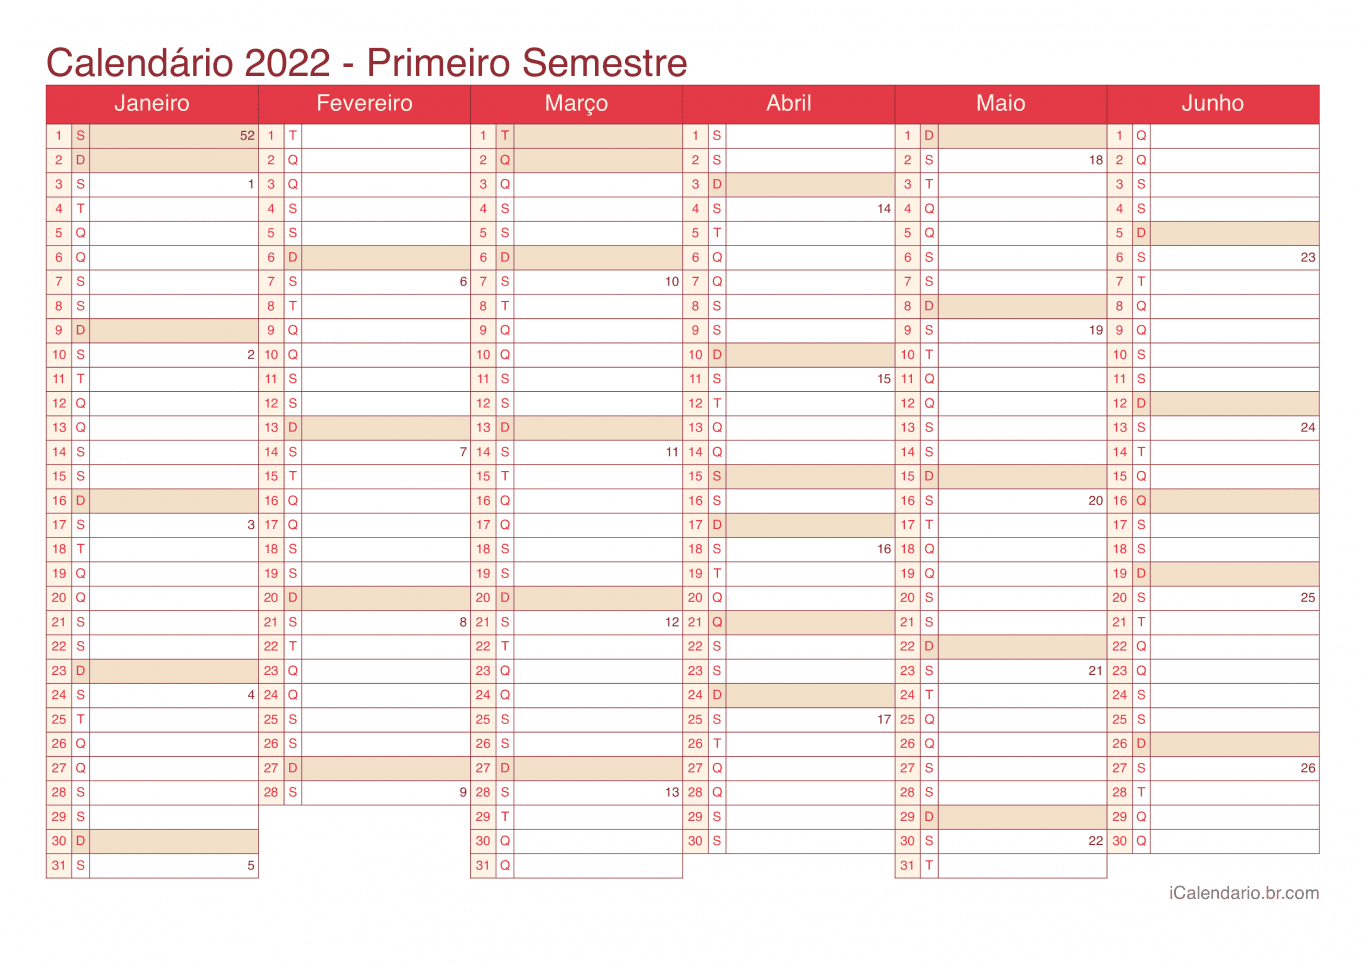 Calendário por semestre com números da semana 2022 - Cherry